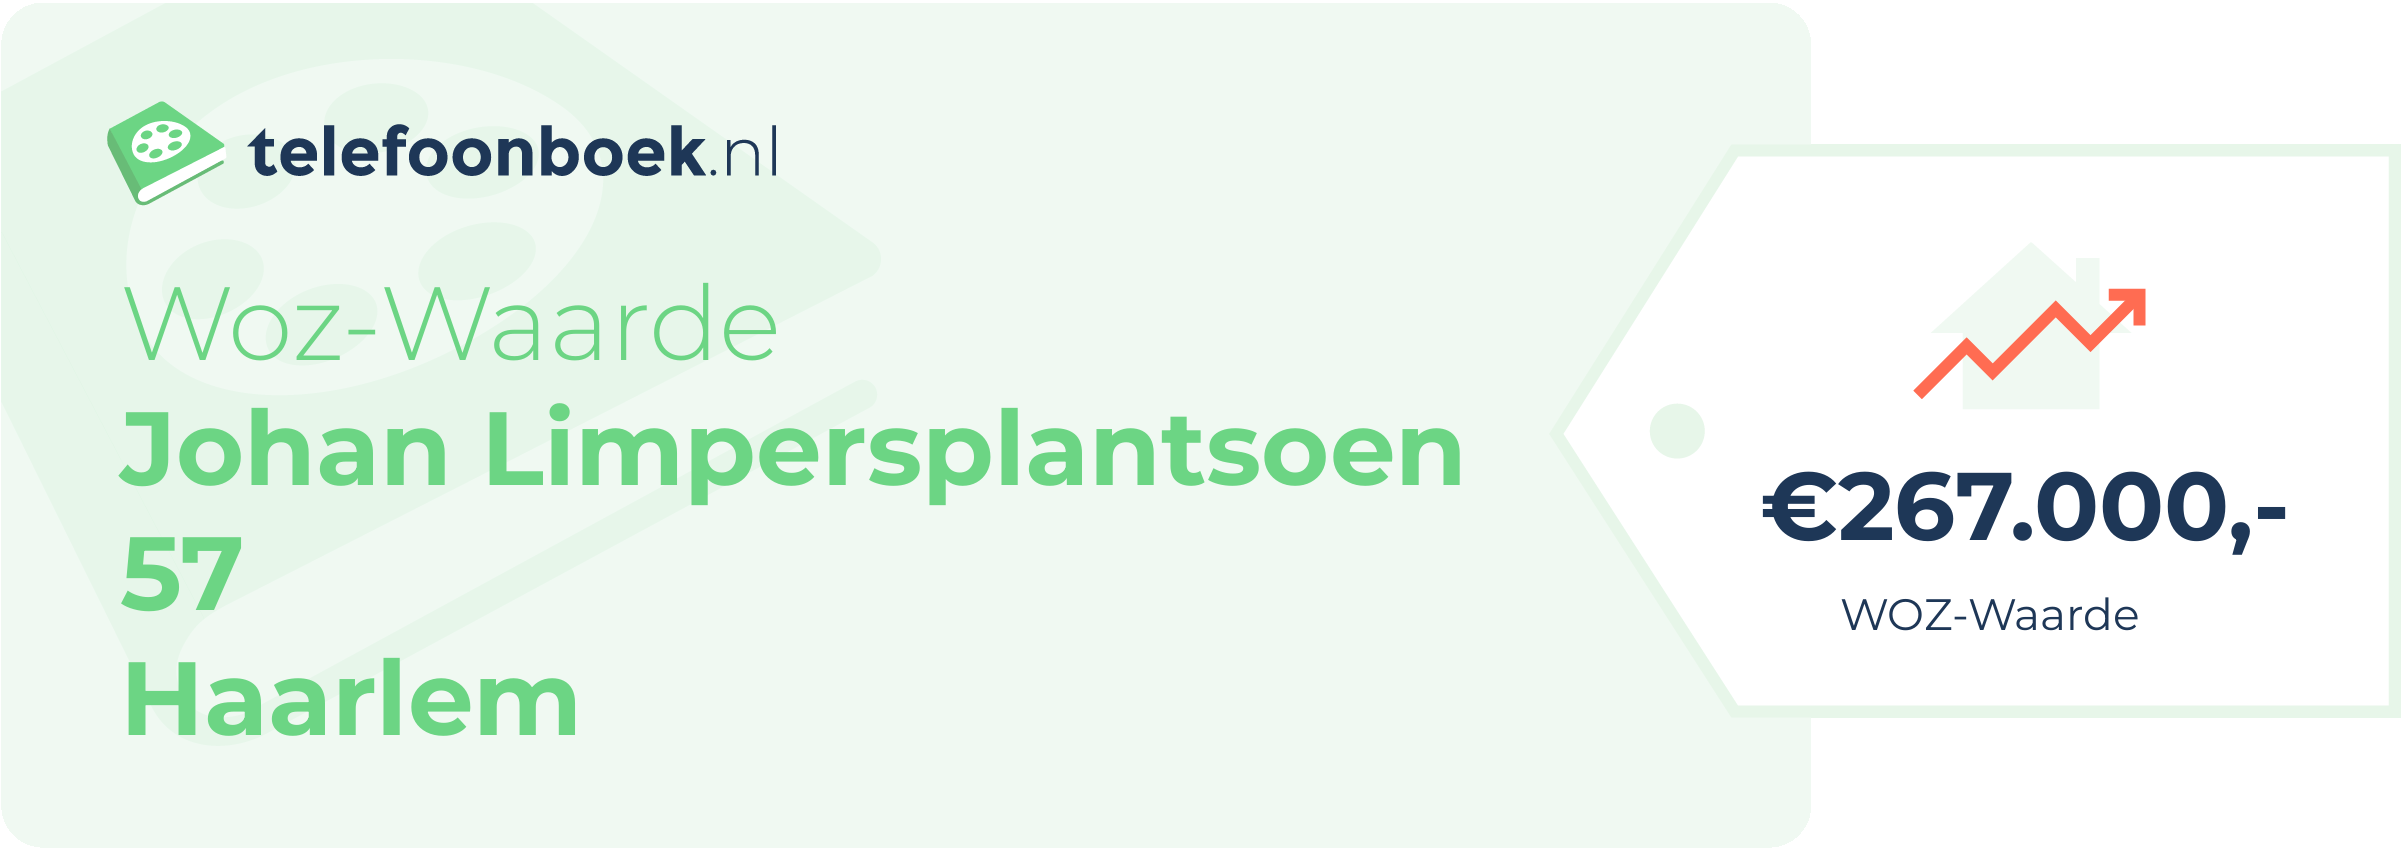 WOZ-waarde Johan Limpersplantsoen 57 Haarlem